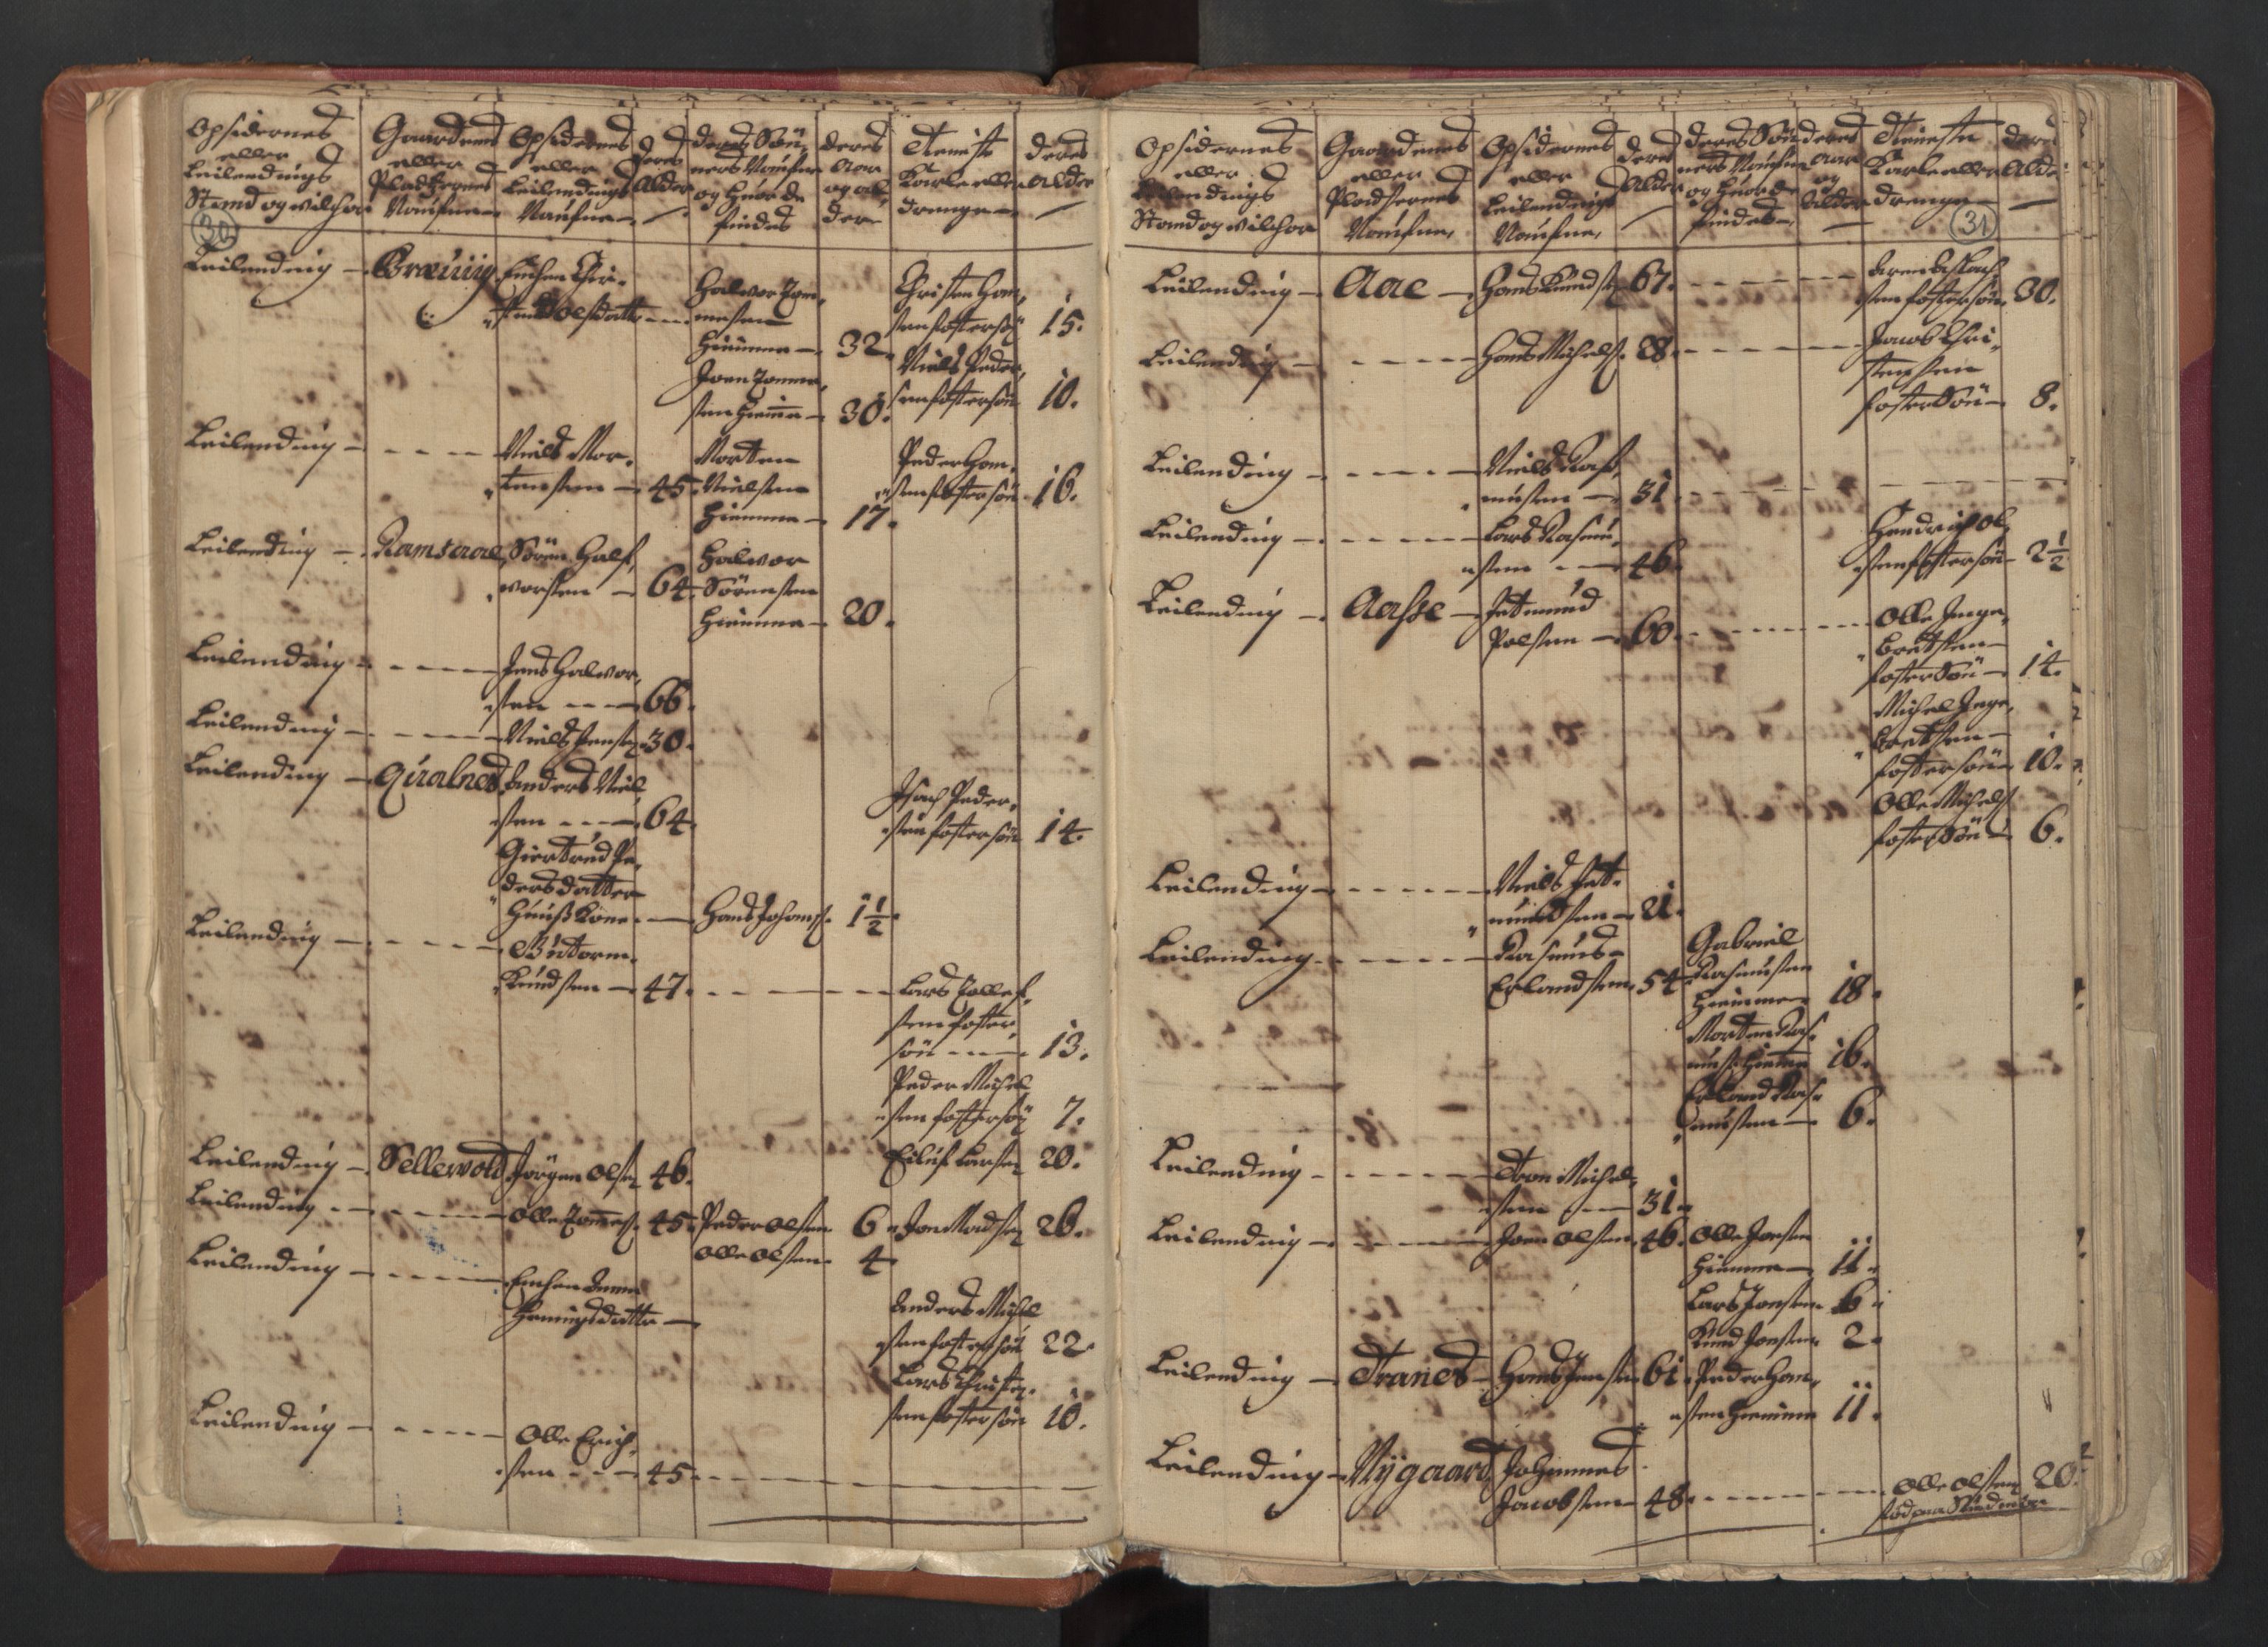 RA, Census (manntall) 1701, no. 18: Vesterålen, Andenes and Lofoten fogderi, 1701, p. 30-31